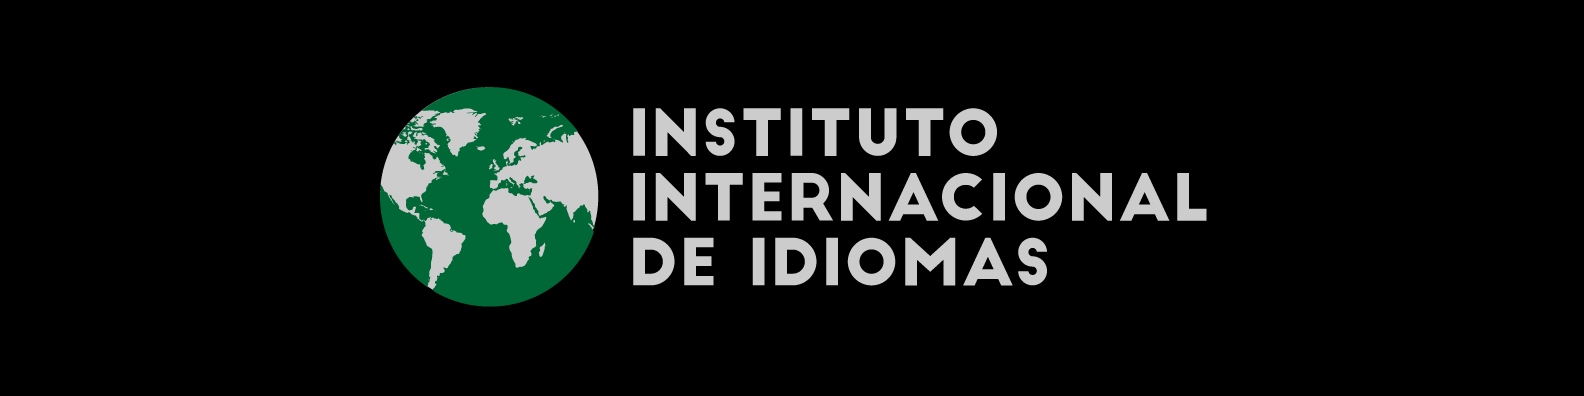 Logotipo INSTITUTO INTERNACIONAL DE IDIOMAS